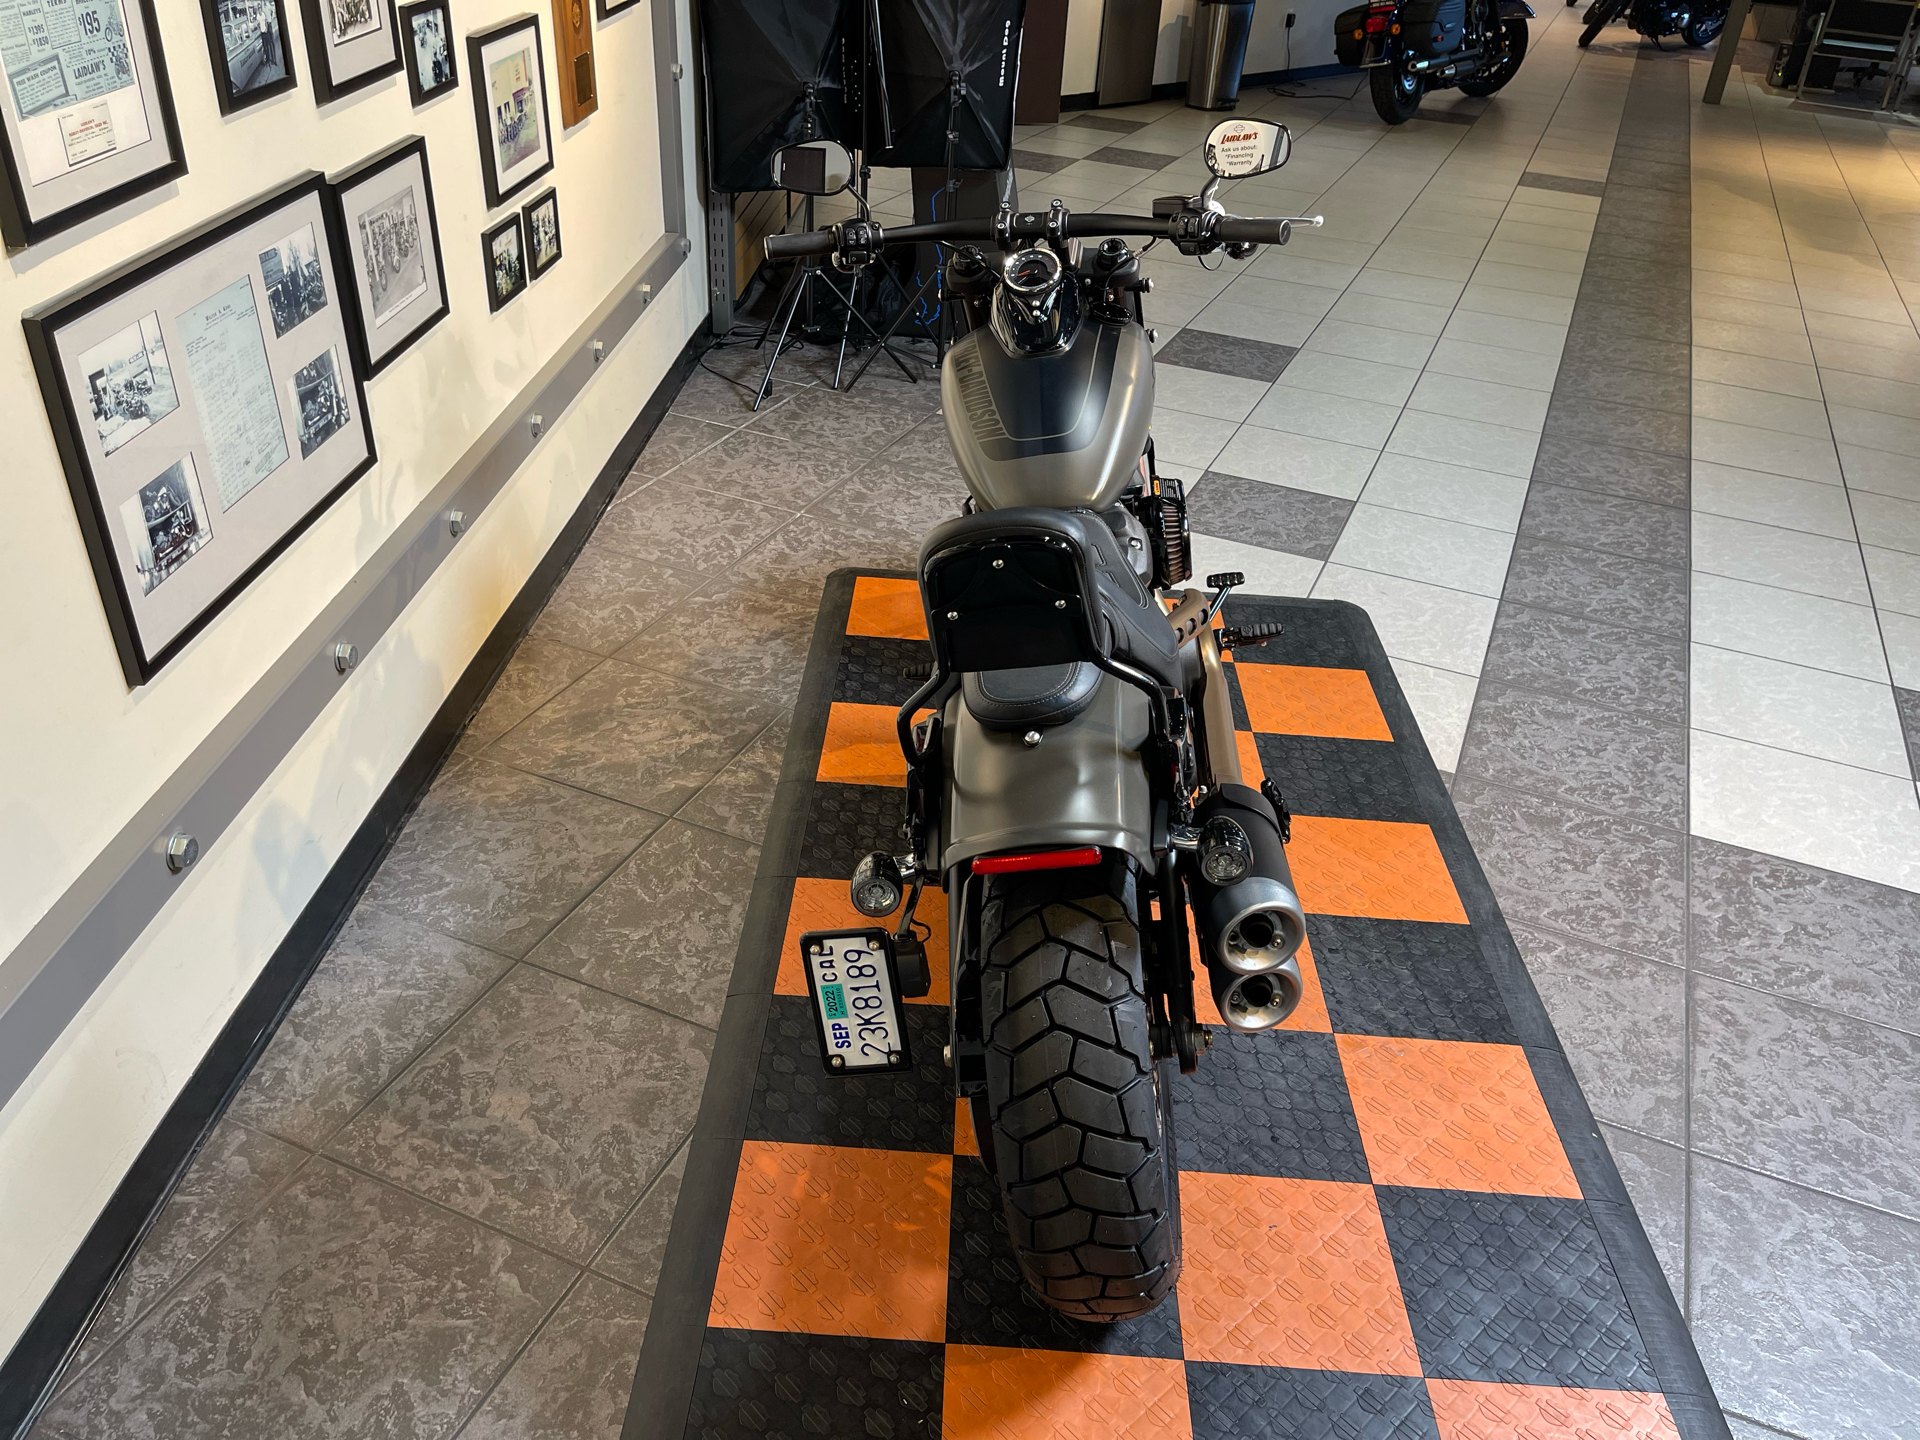 2018 Harley-Davidson Fat Bob® 114 in Baldwin Park, California - Photo 3